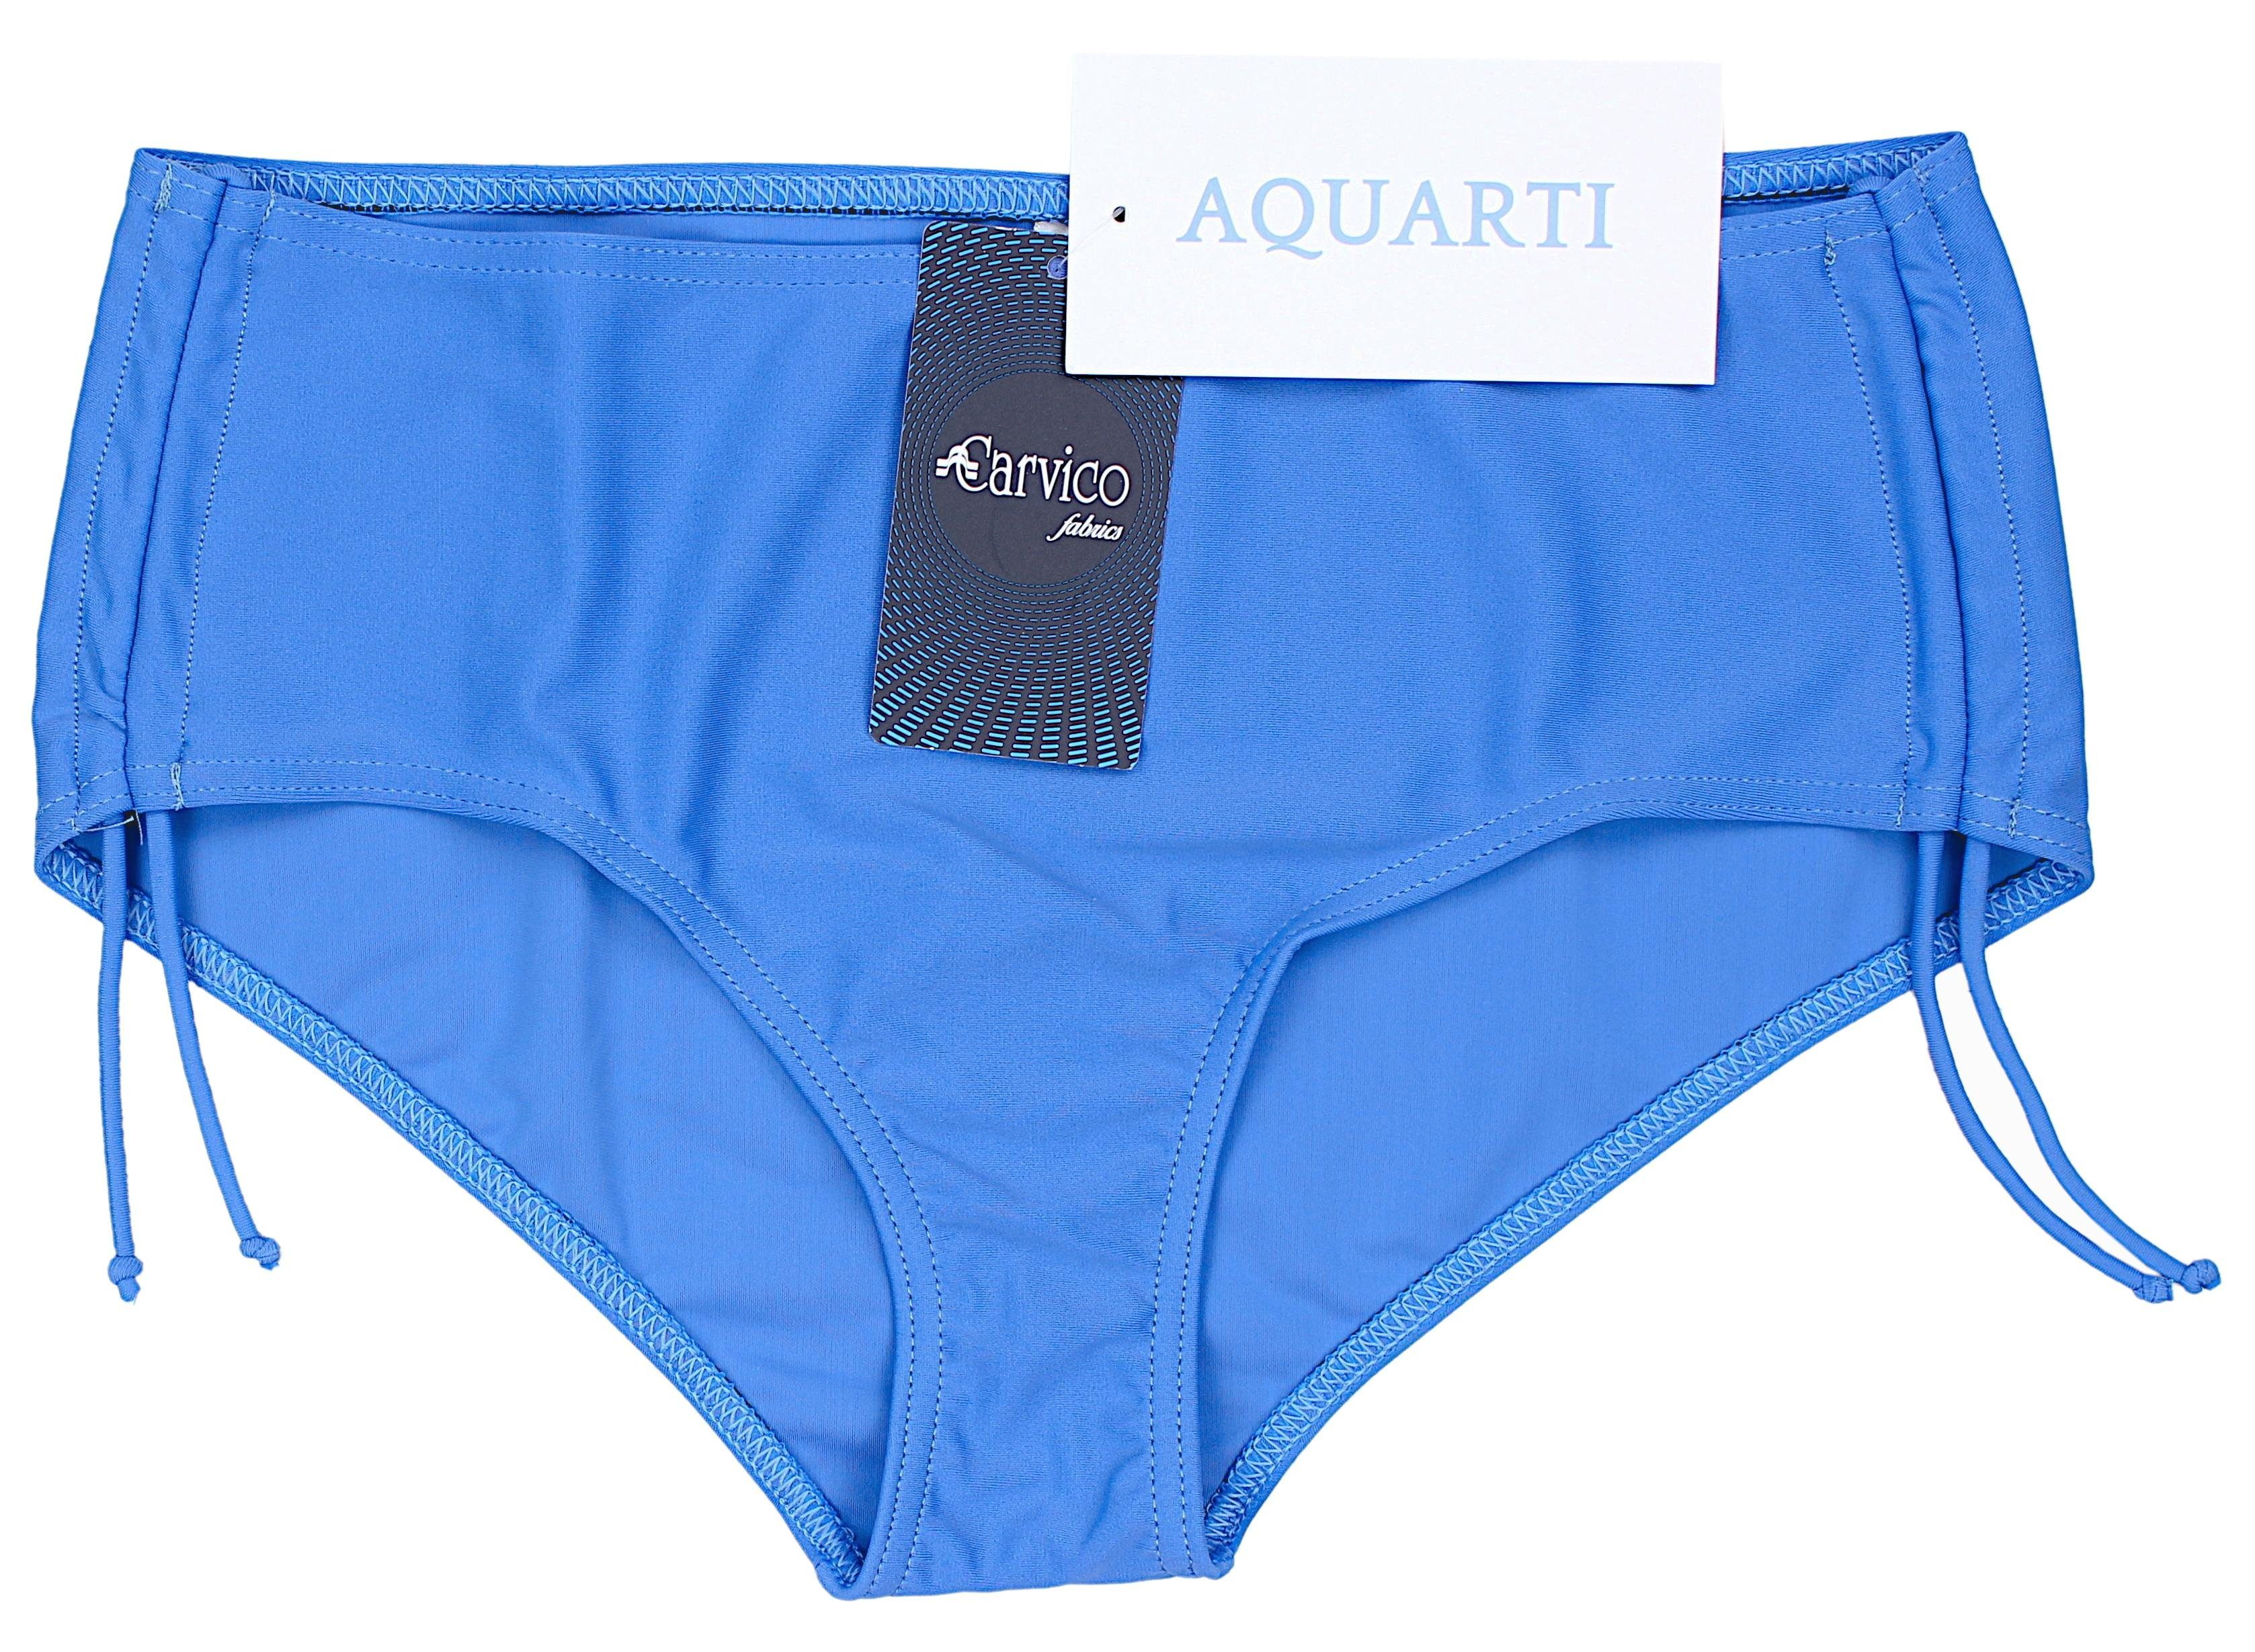 Aquarti Raffung Bikinihose mit und Aquarti Damen Bikini-Hose Schnüren Jeansblau